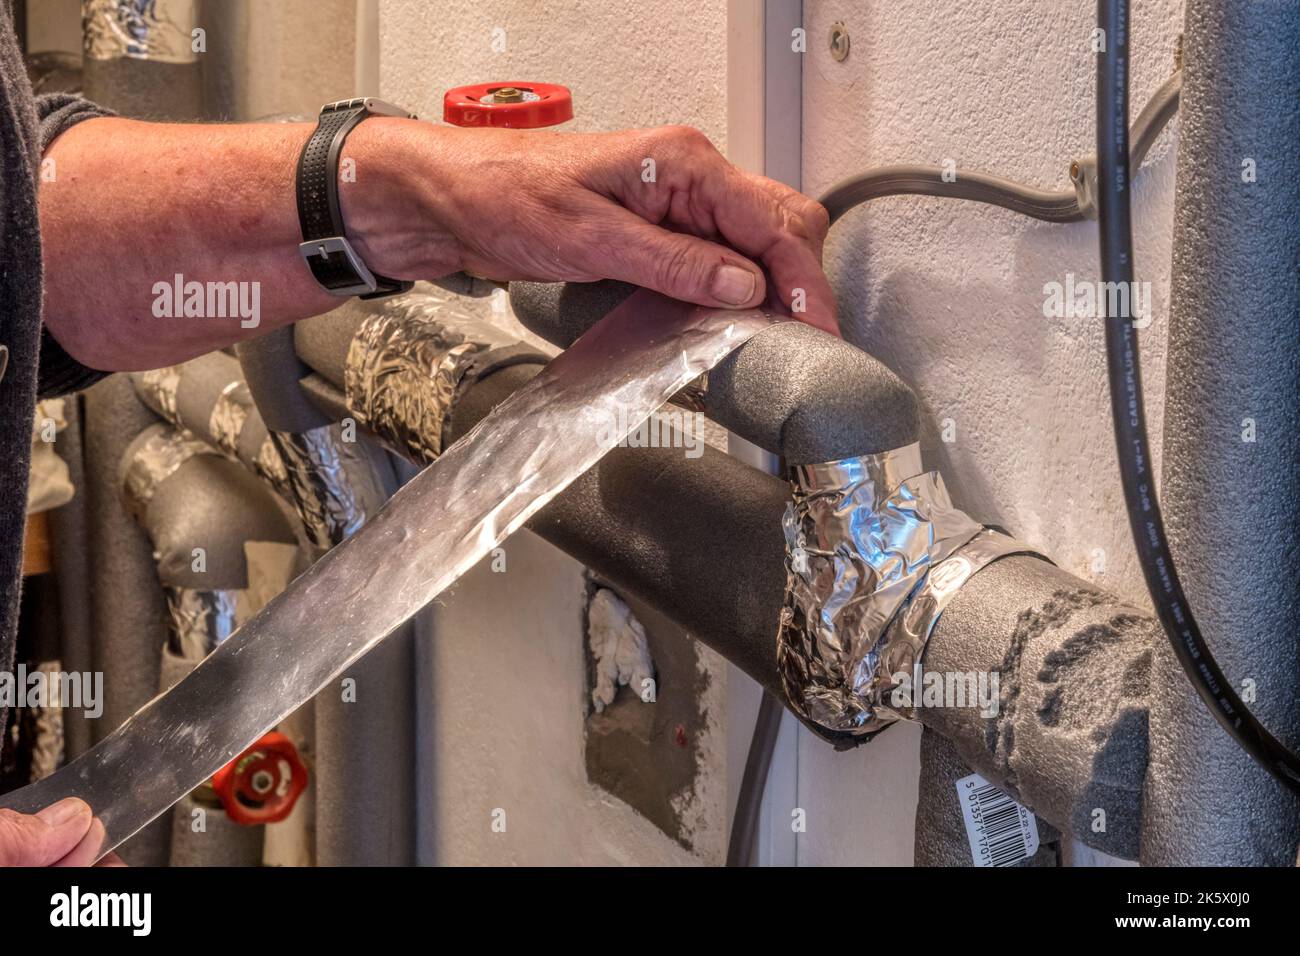 Frau hinkt in einem Belüftungsschrank mit Heißwasserleitungen zurück und klebt sie mit Klebeband, um Wärme zu sparen und die Energieeffizienz zu verbessern. Stockfoto